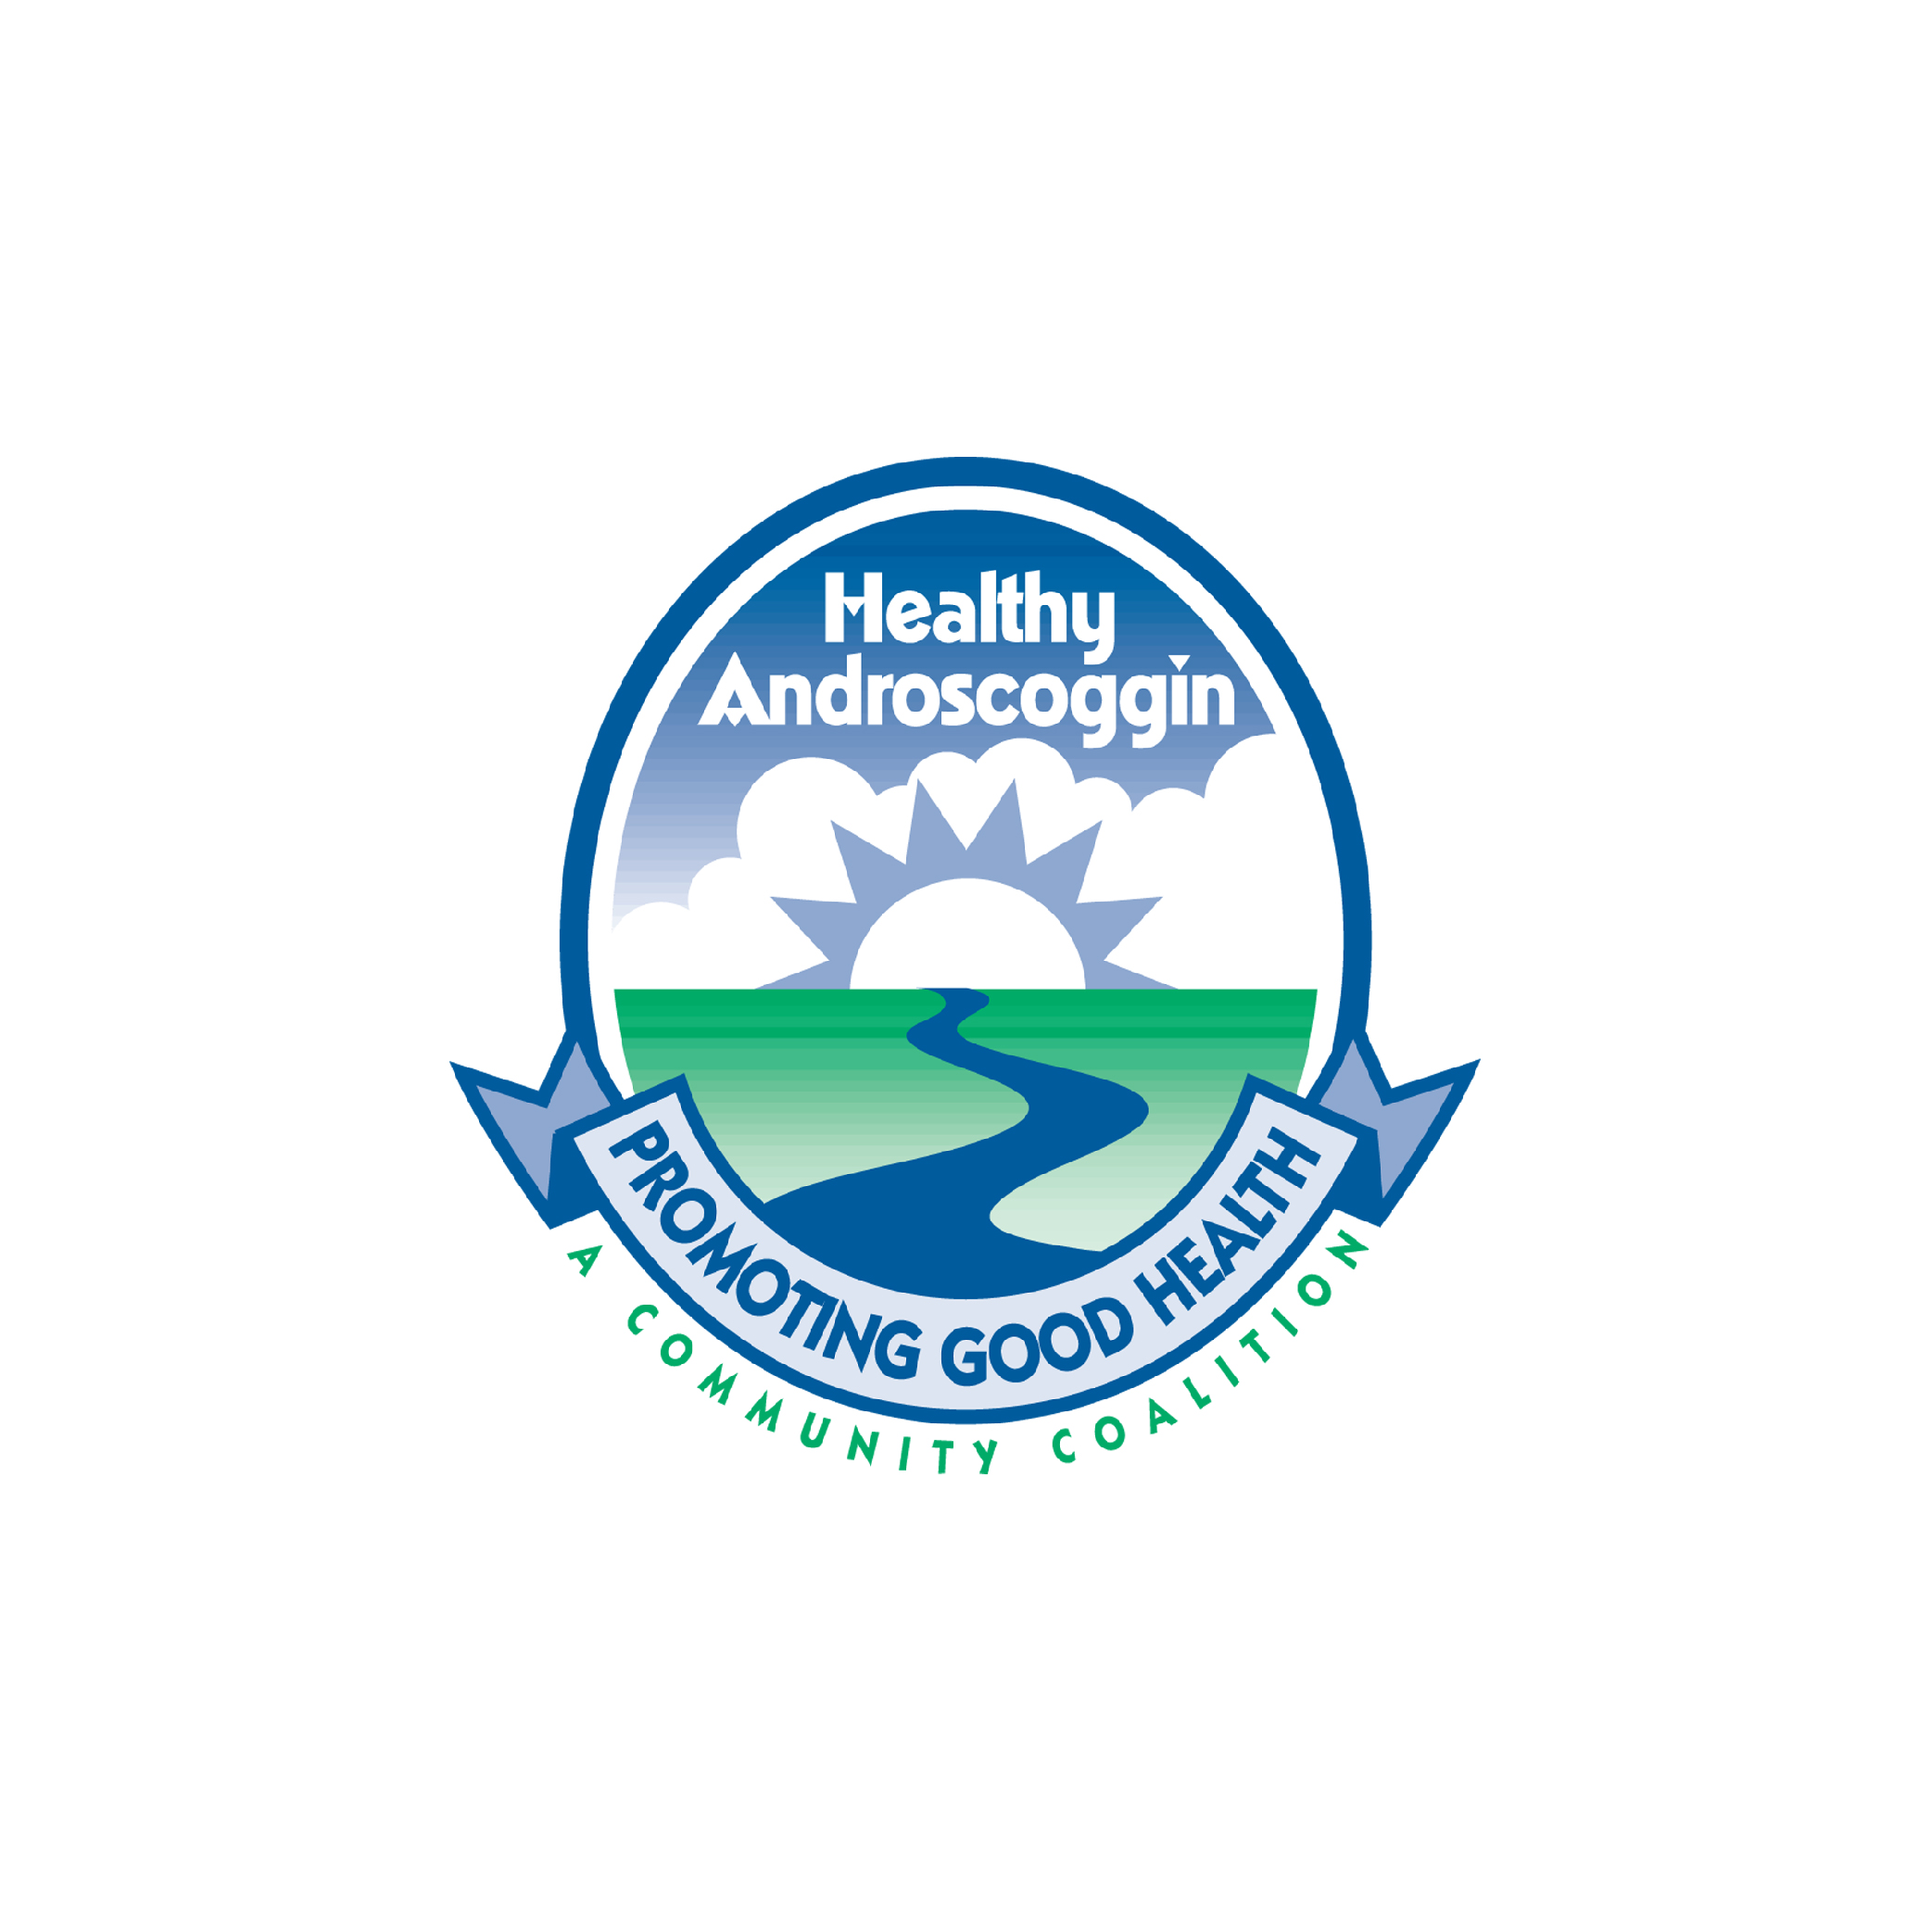 Logotipo de la coalición comunitaria Healthy Androscoggin